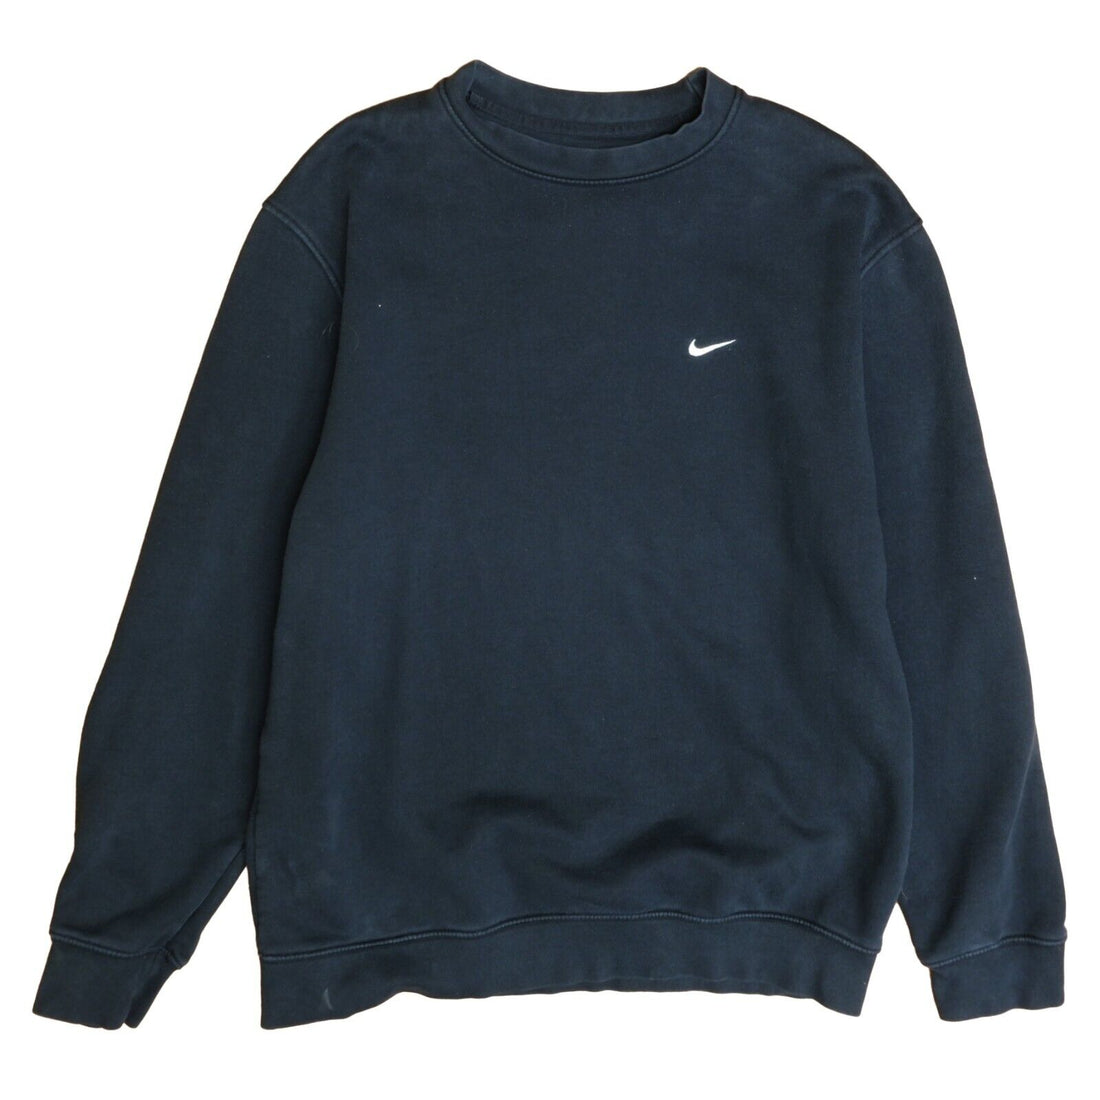 Vintage Nike Sweatshirt Crewneck Size Medium Black Embroidered Swoosh